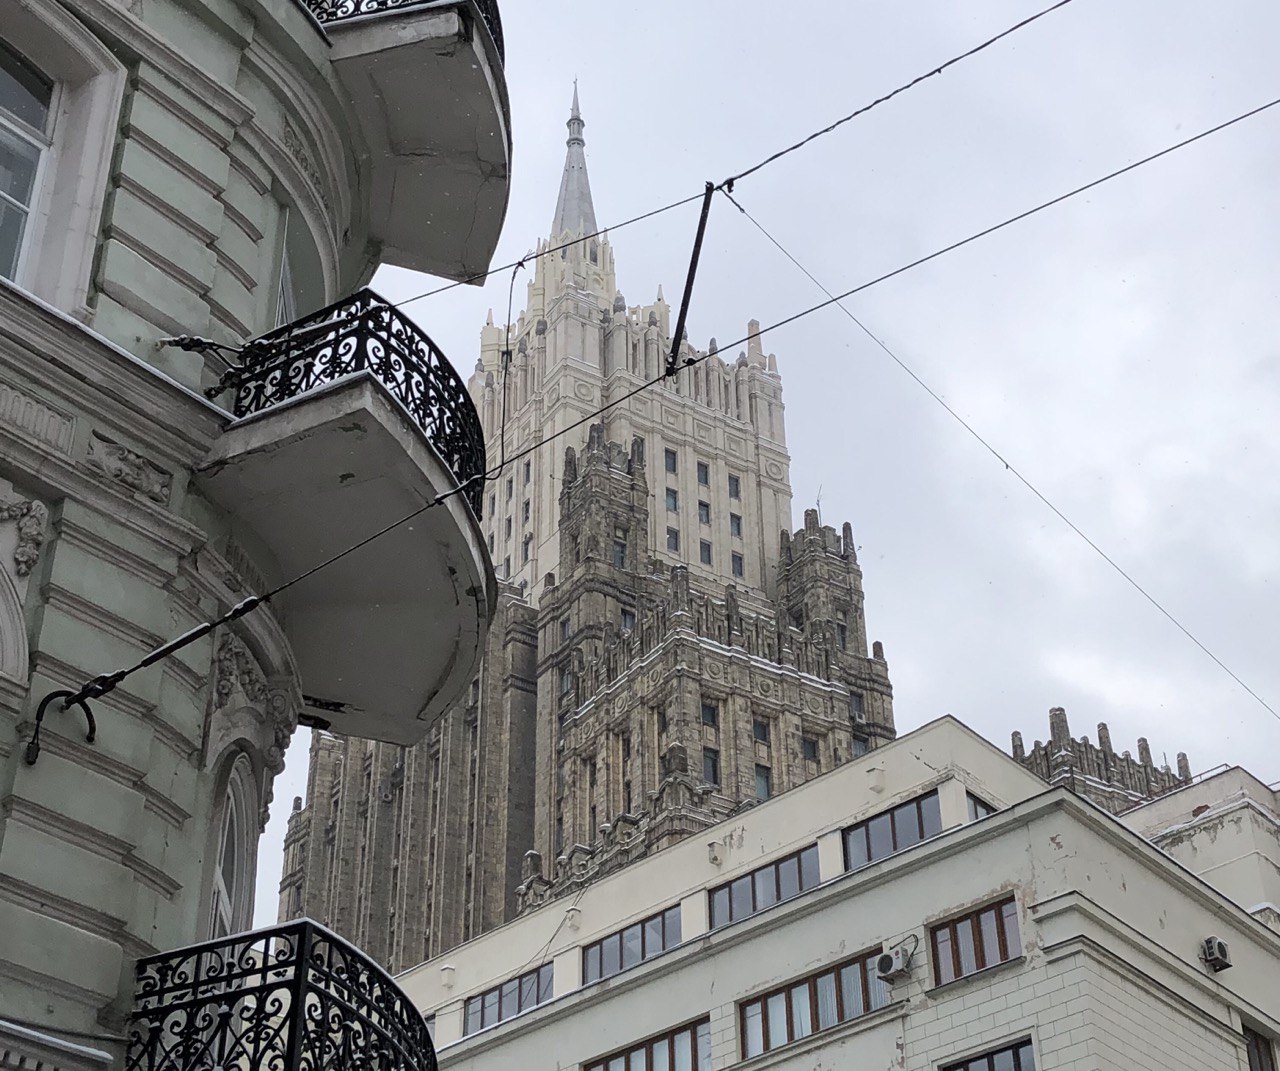 Теперь и в России сформировался рынок арендного жилья